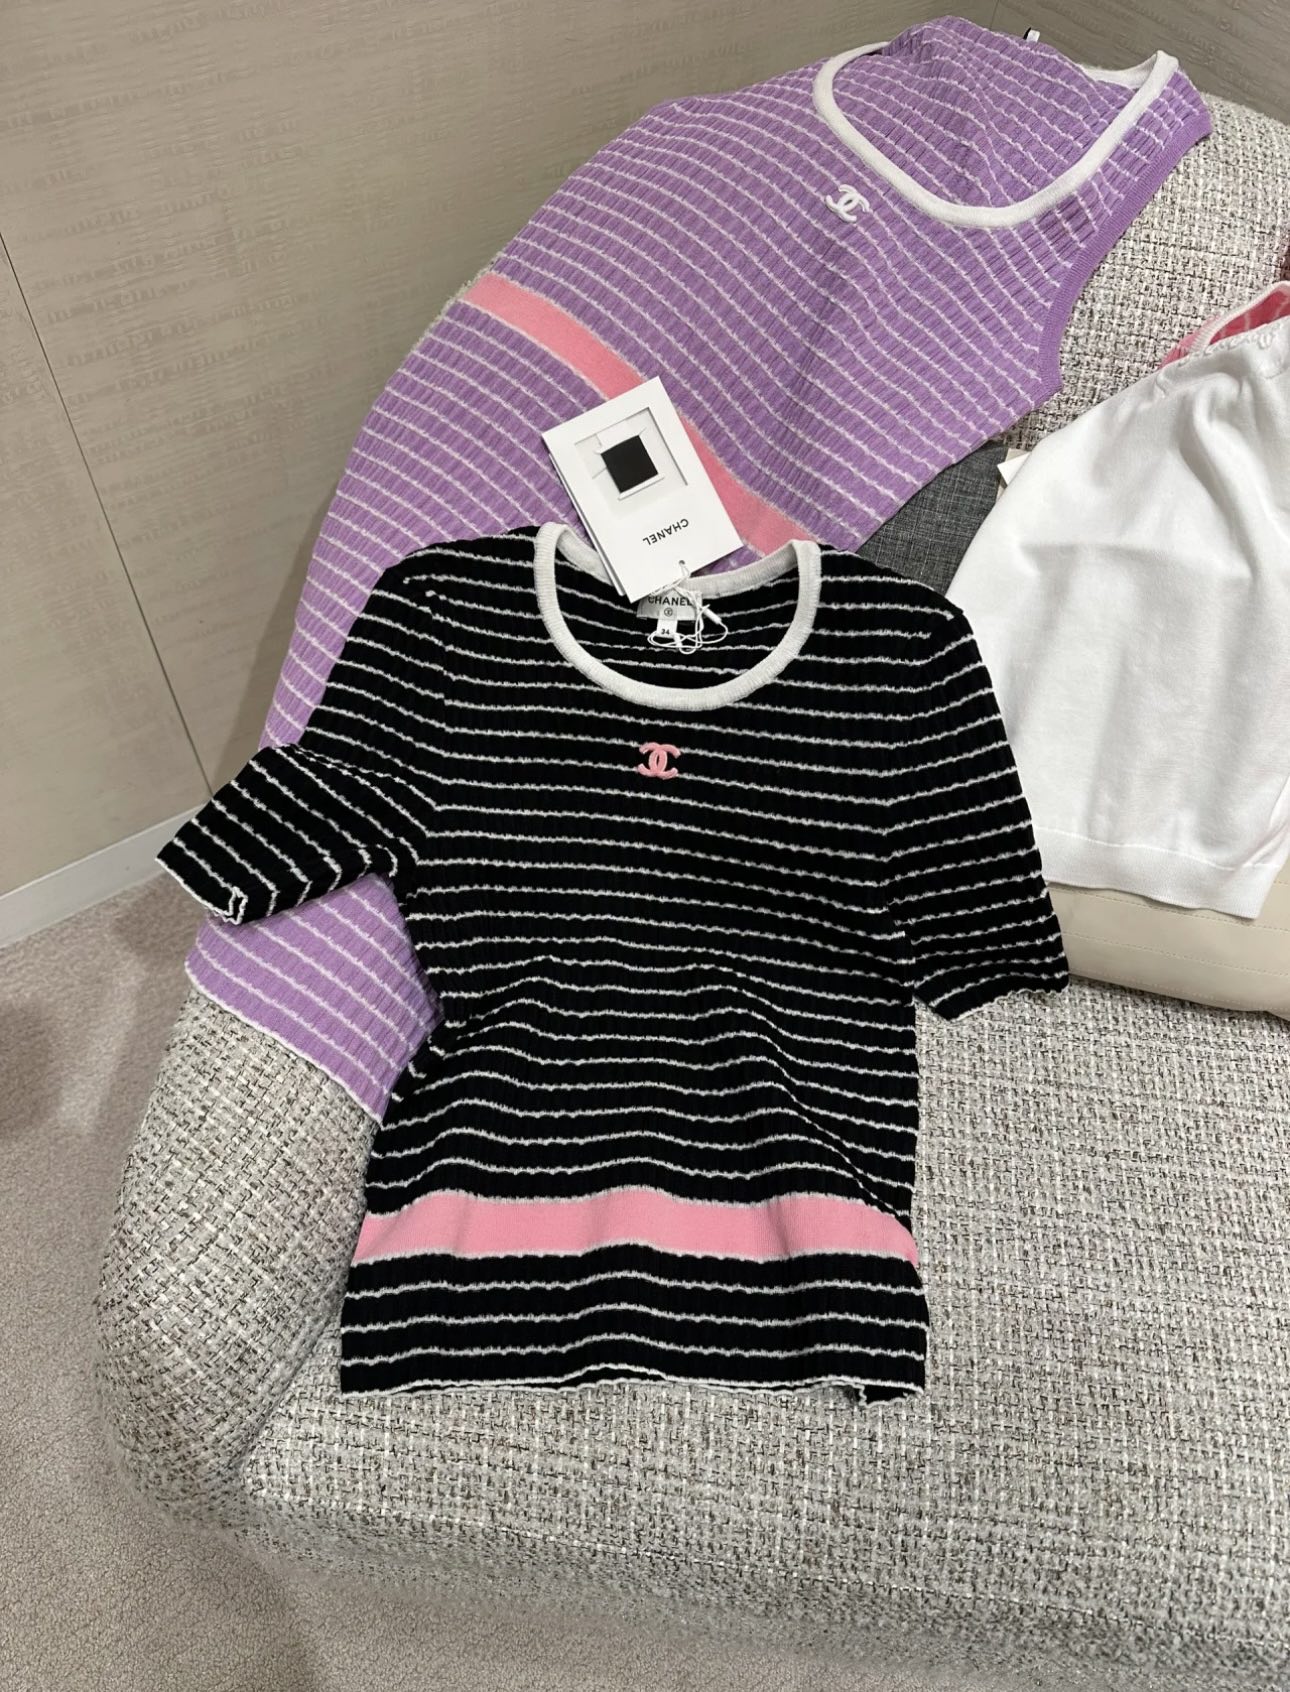  短袖 (黑/白/紫) 购入⚠️ 独家定染纱线